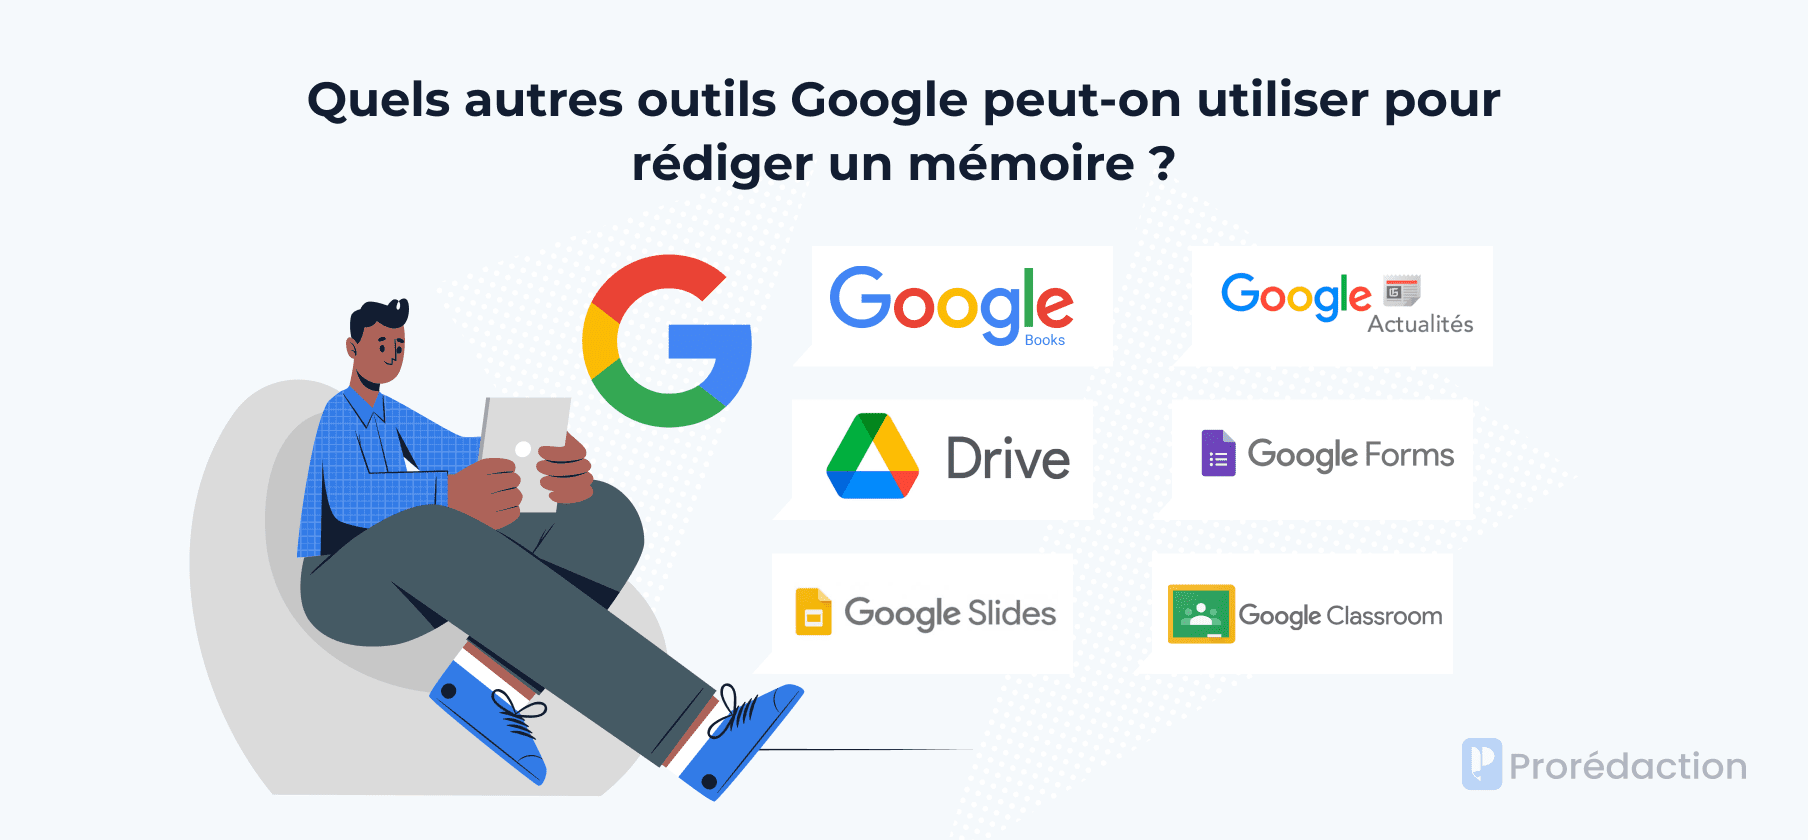 Quels autres outils Google peut-on utiliser pour rédiger un mémoire ?